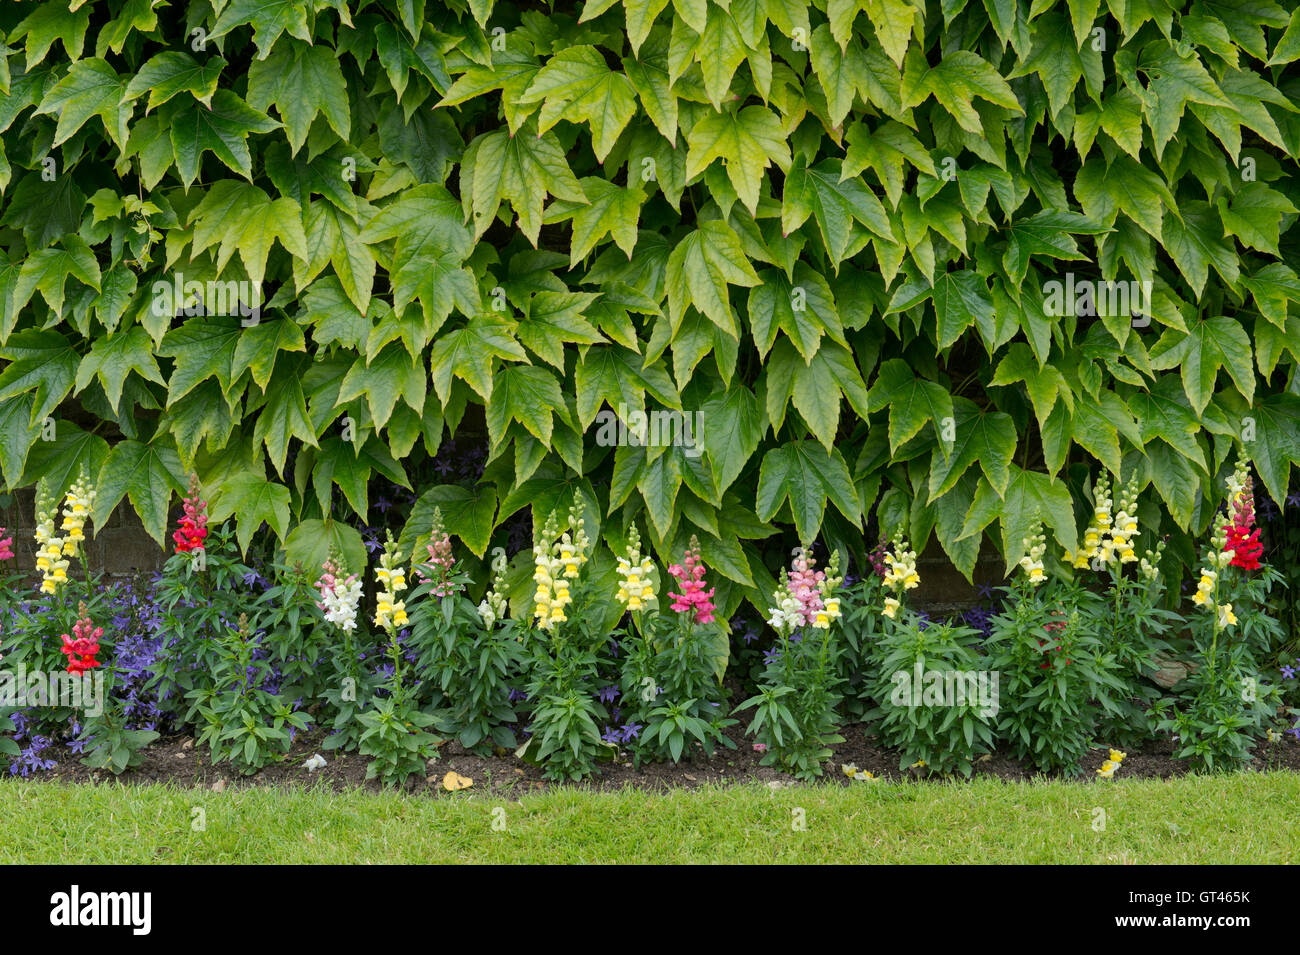 Du Parthenocissus tricuspidata. Boston ivy / réducteur japonais sur un mur de jardin avec fleurs snapdragon. Arles, France Banque D'Images